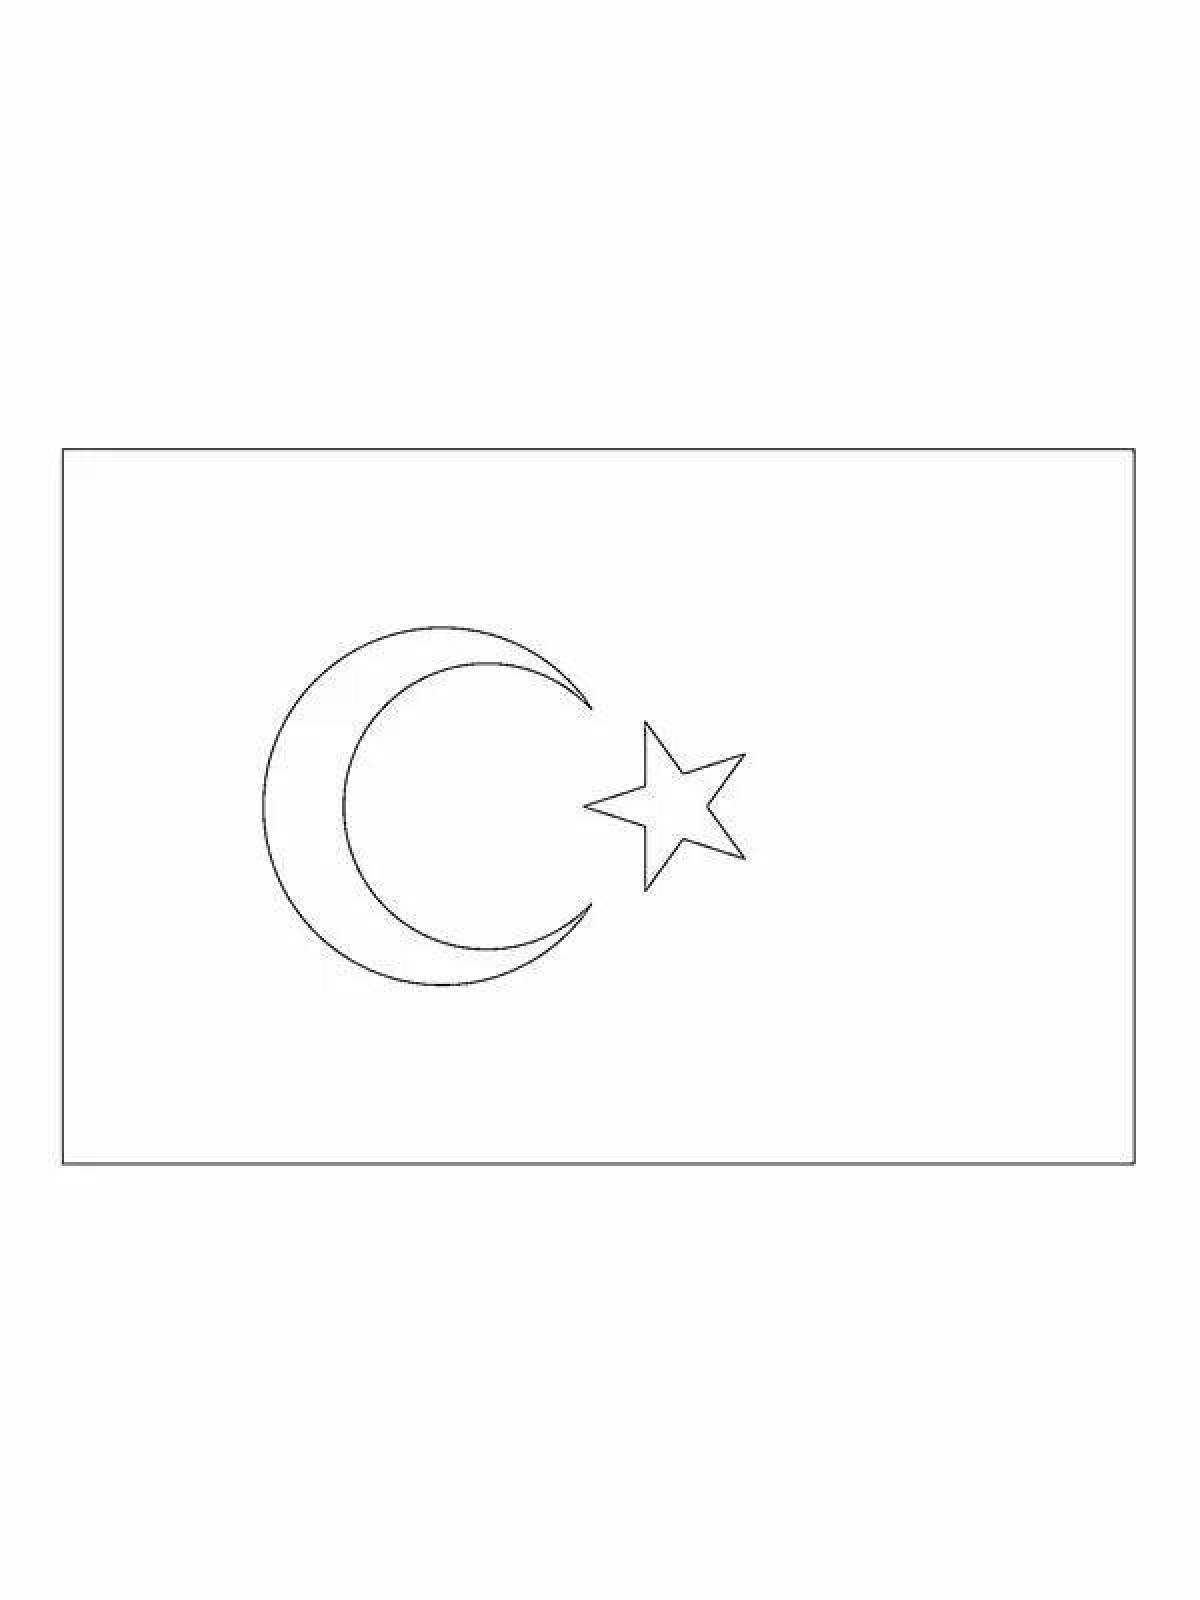 Turkish flag #6